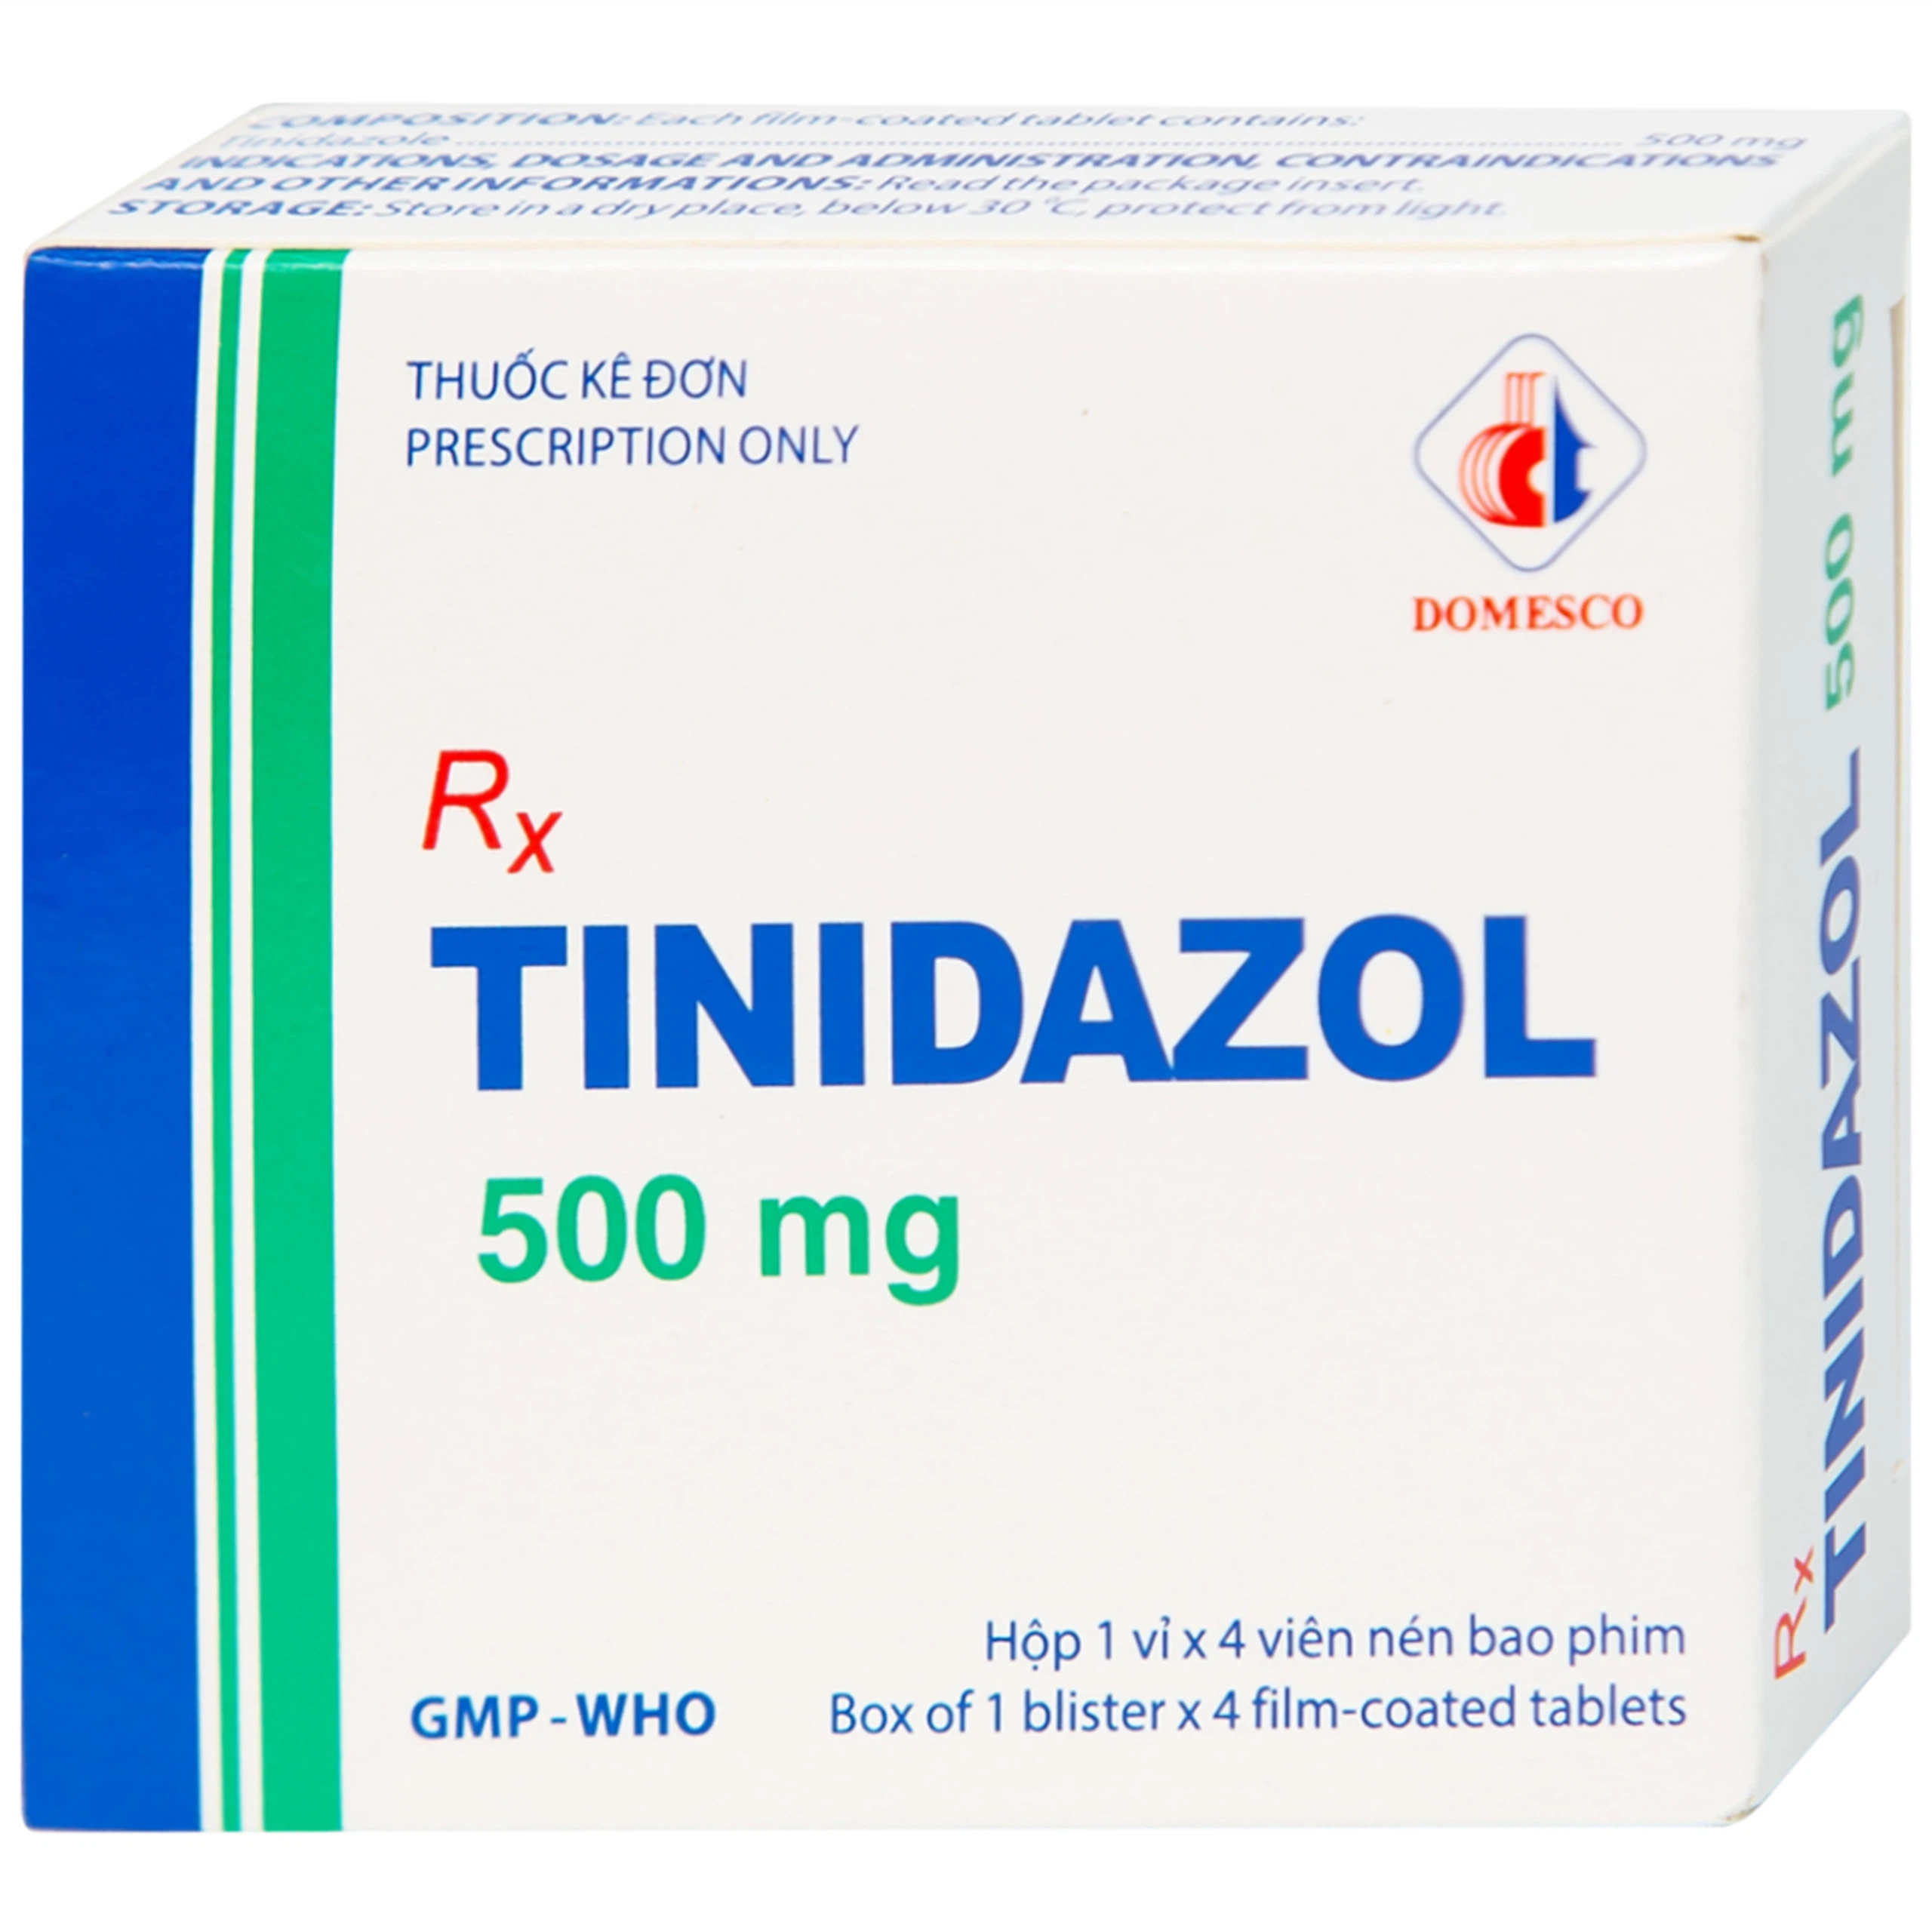 Thuốc Tinidazol 500mg Domesco dự phòng nhiễm khuẩn sau phẫu thuật (1 vỉ x 4 viên)